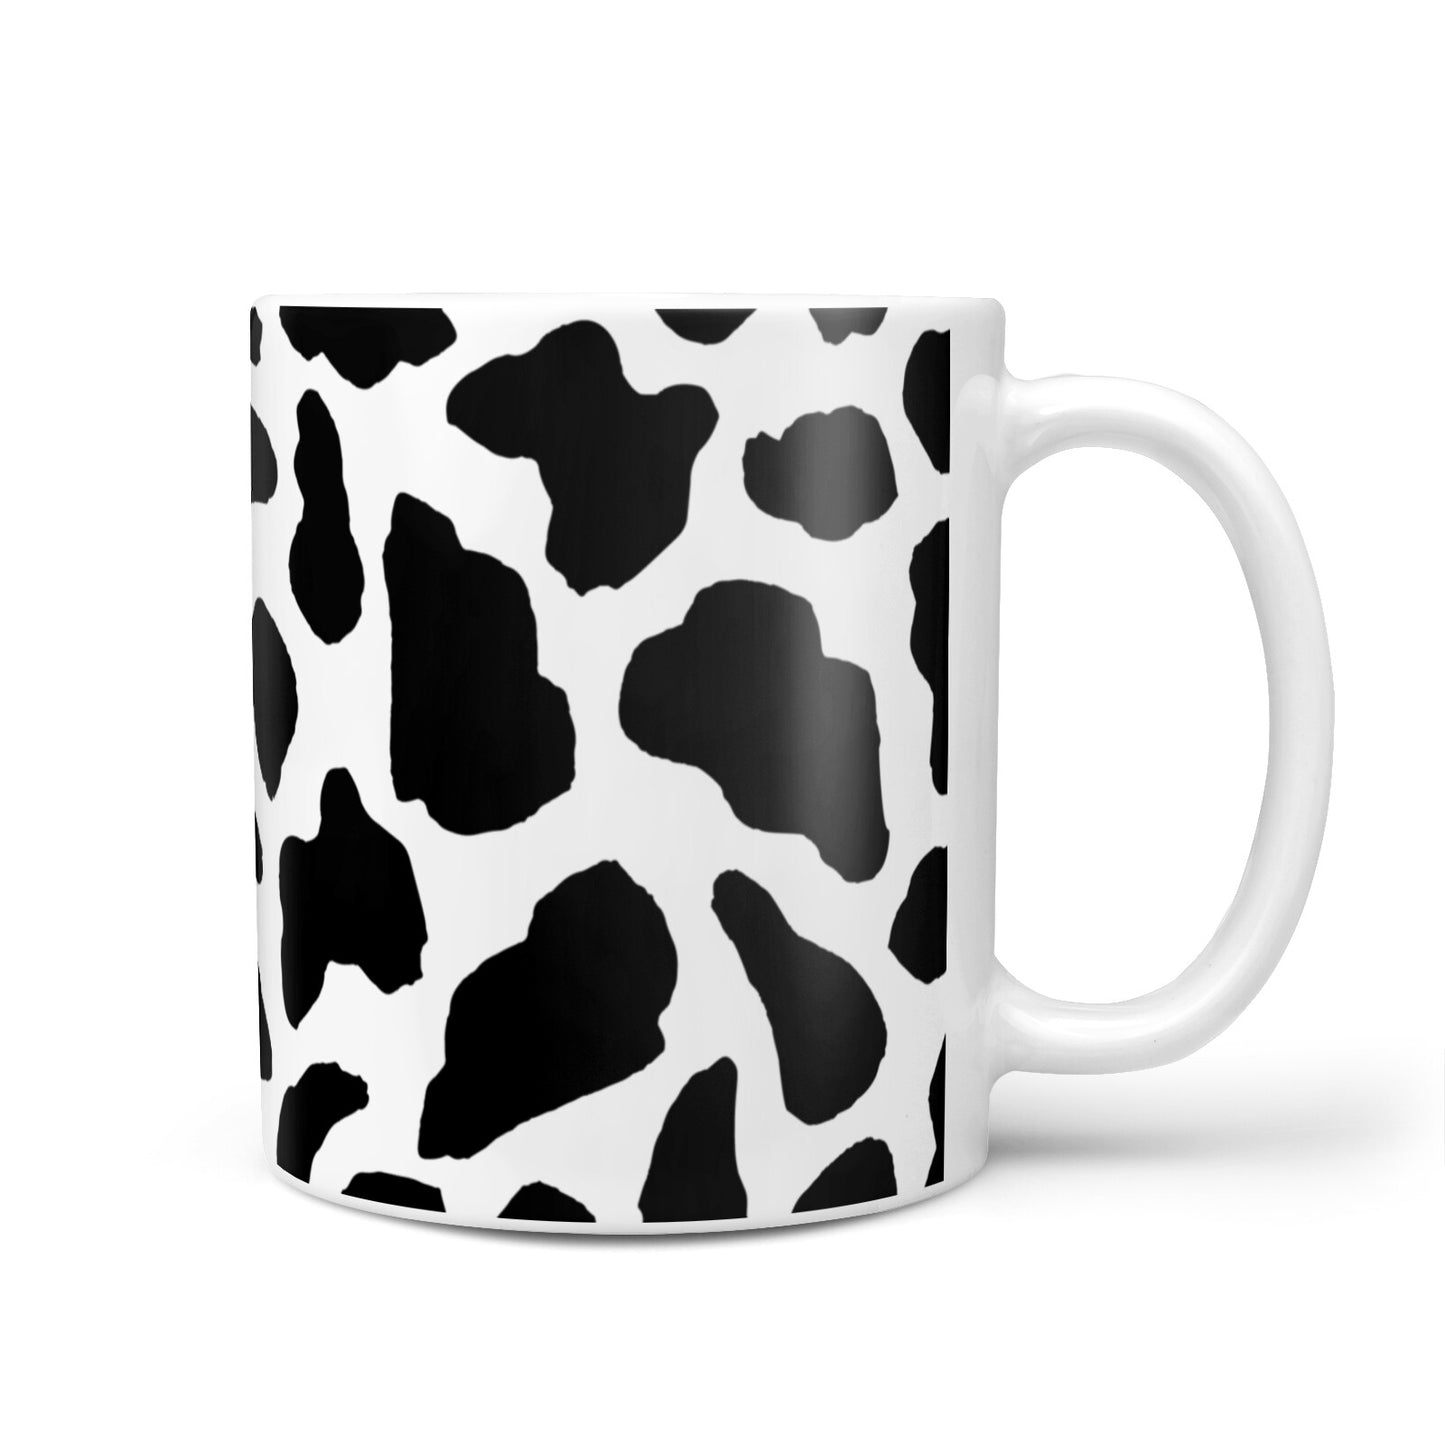 Black Cow Print 10oz Mug